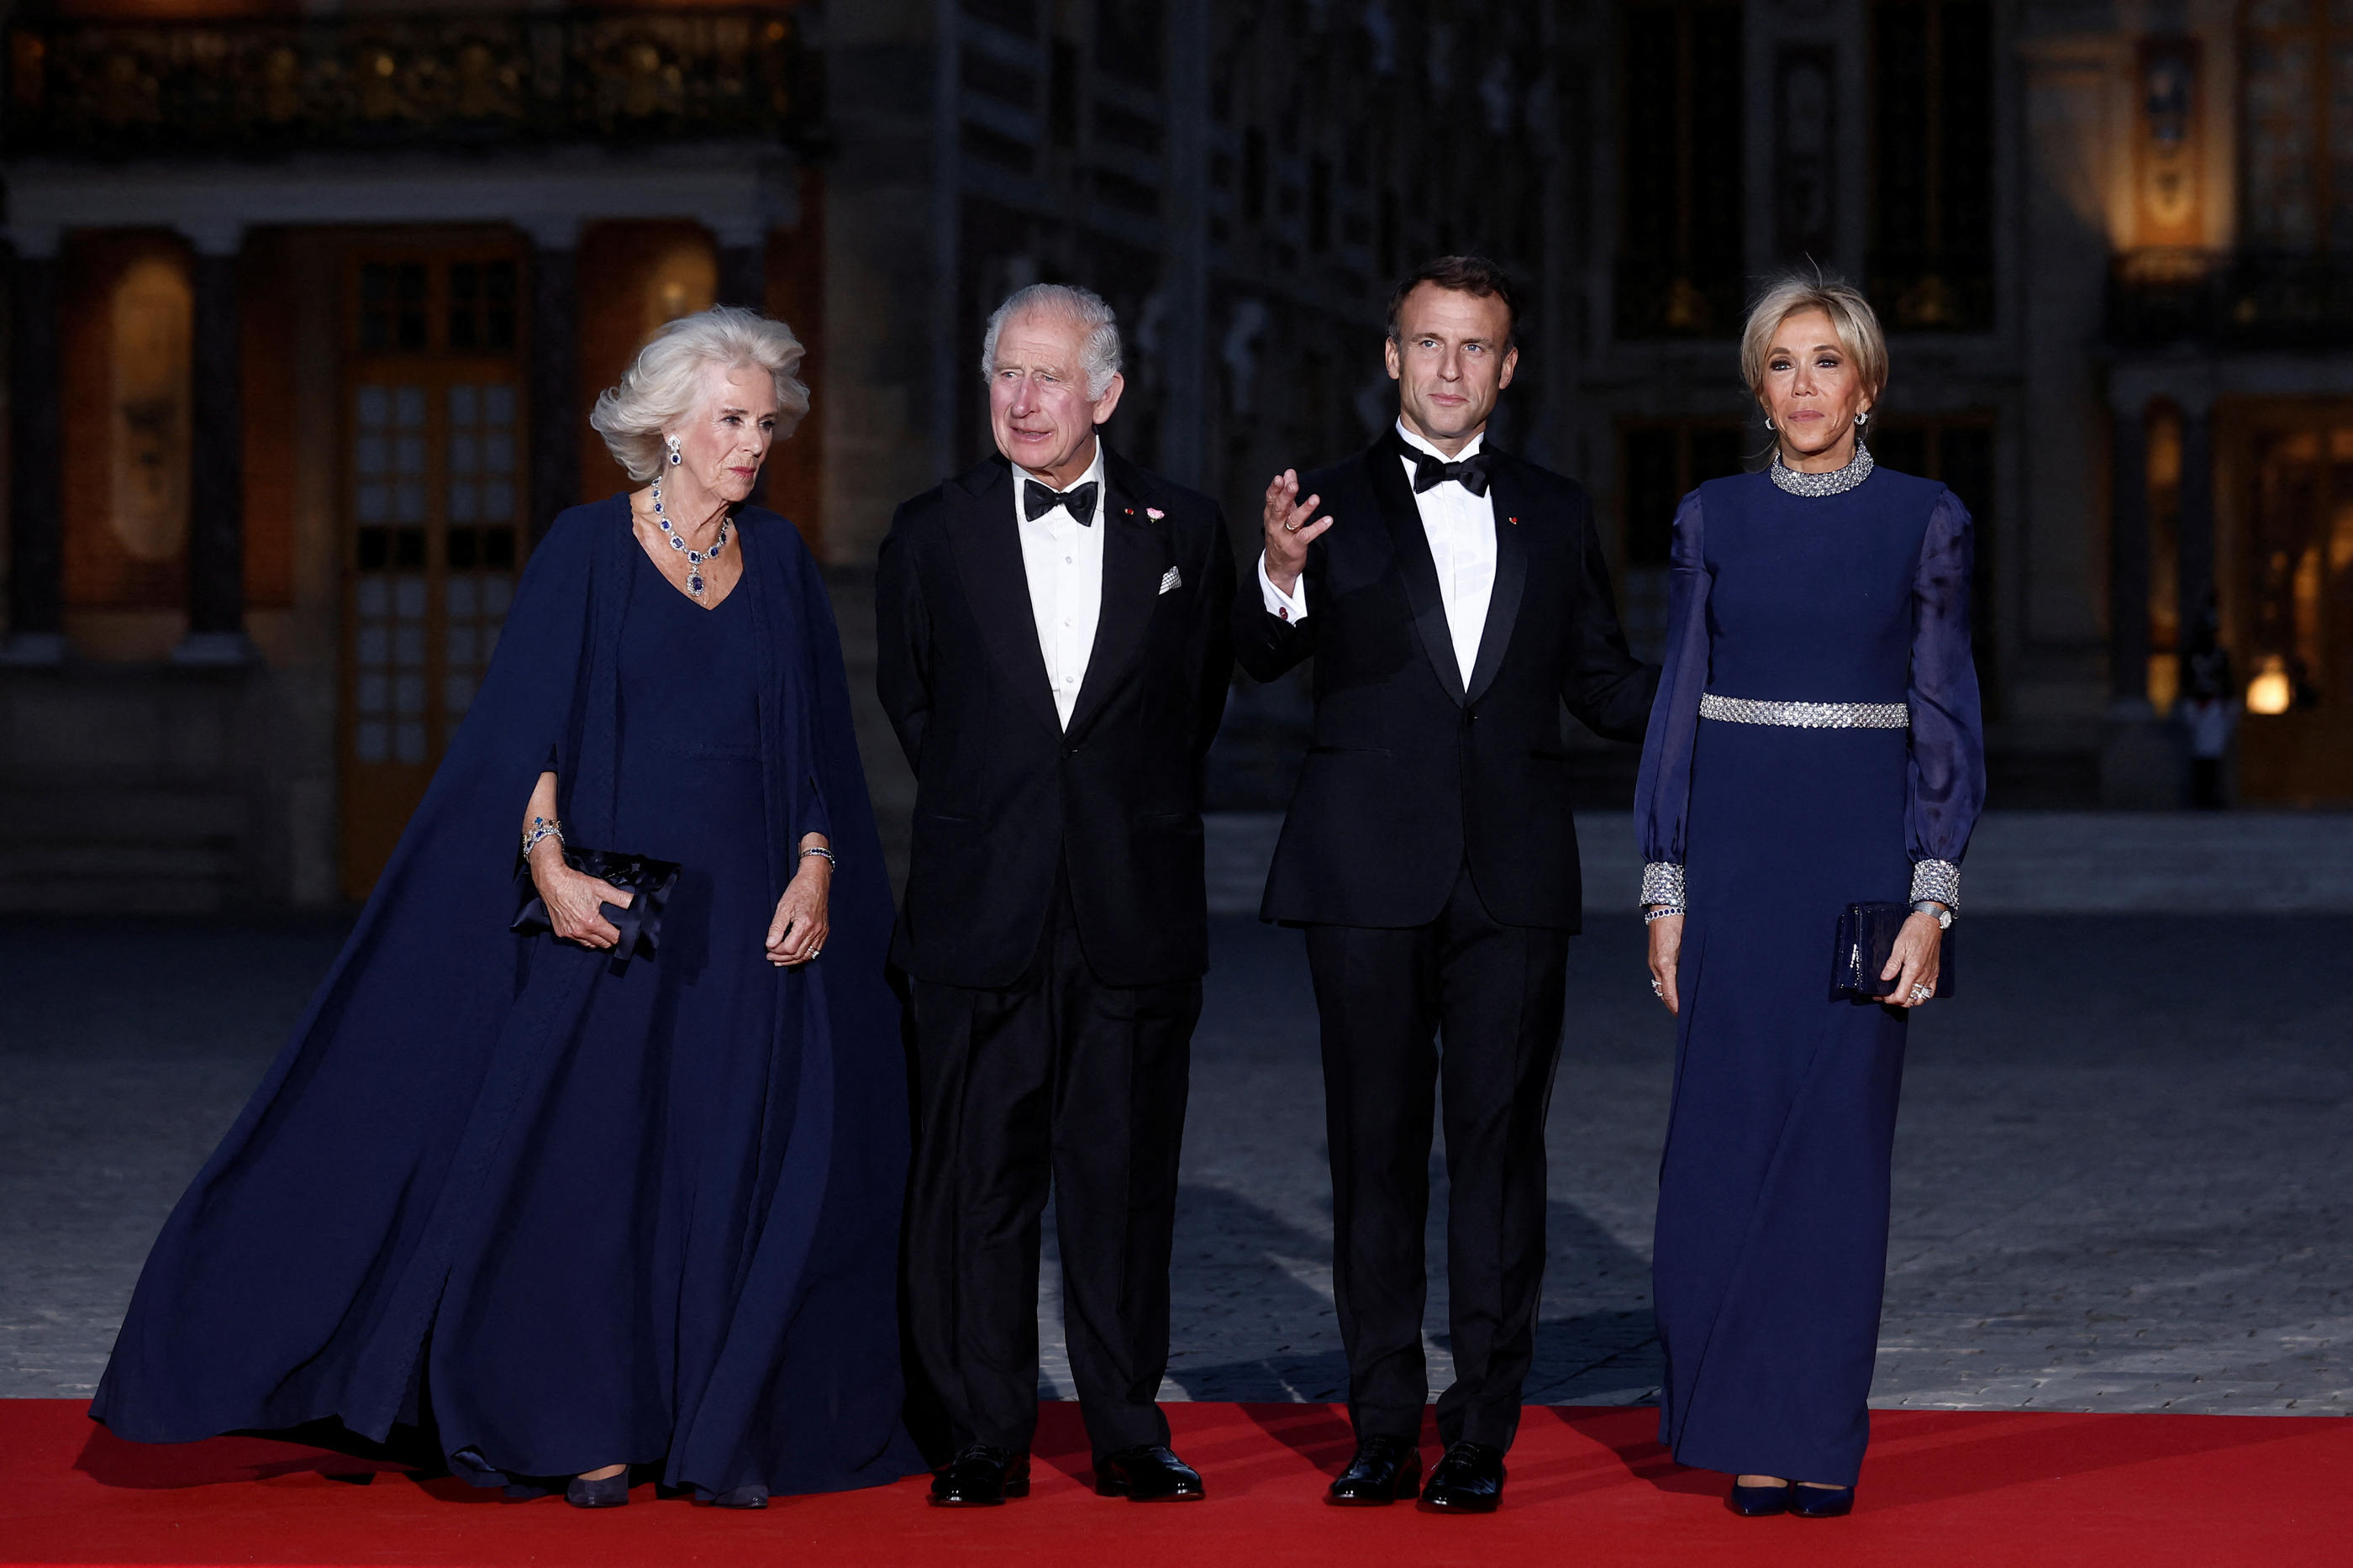  Le président Emmanuel Macron et Brigitte Macron, aux côtés du roi Charles III et de son épouse Camilla à Versailles. REUTERS/Benoit Tessier